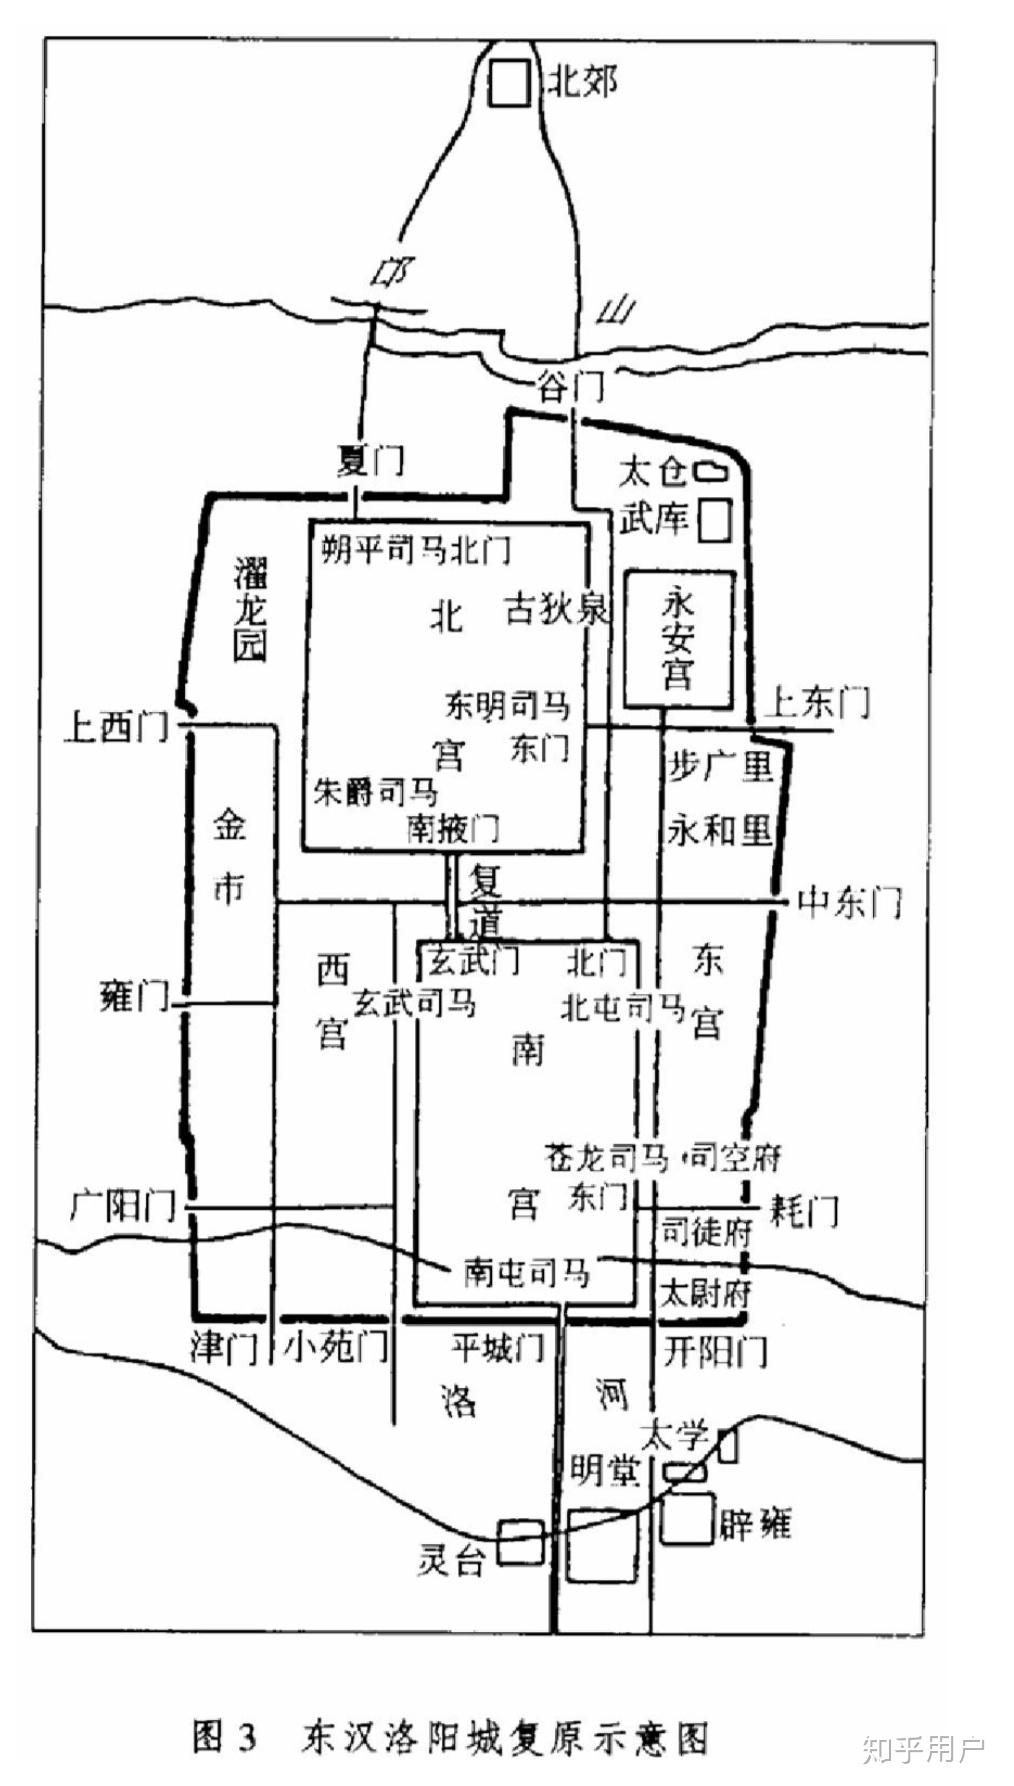 北魏洛阳城真的有100平方千米吗当时的情况下北魏又是怎么建造起来